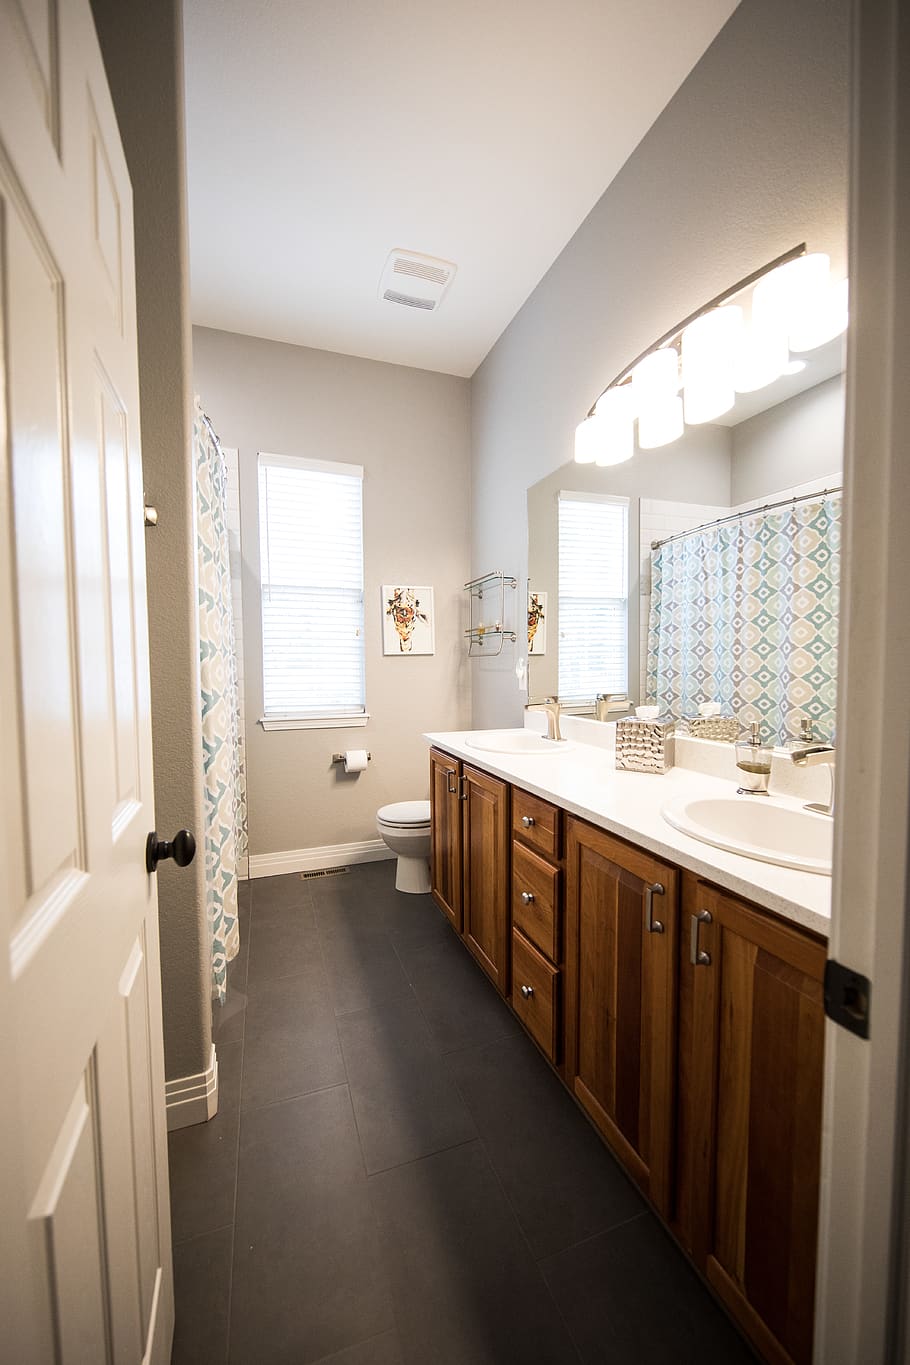 Photo of Bathroom, cabinet, clean, comfort room, curtain, doorway